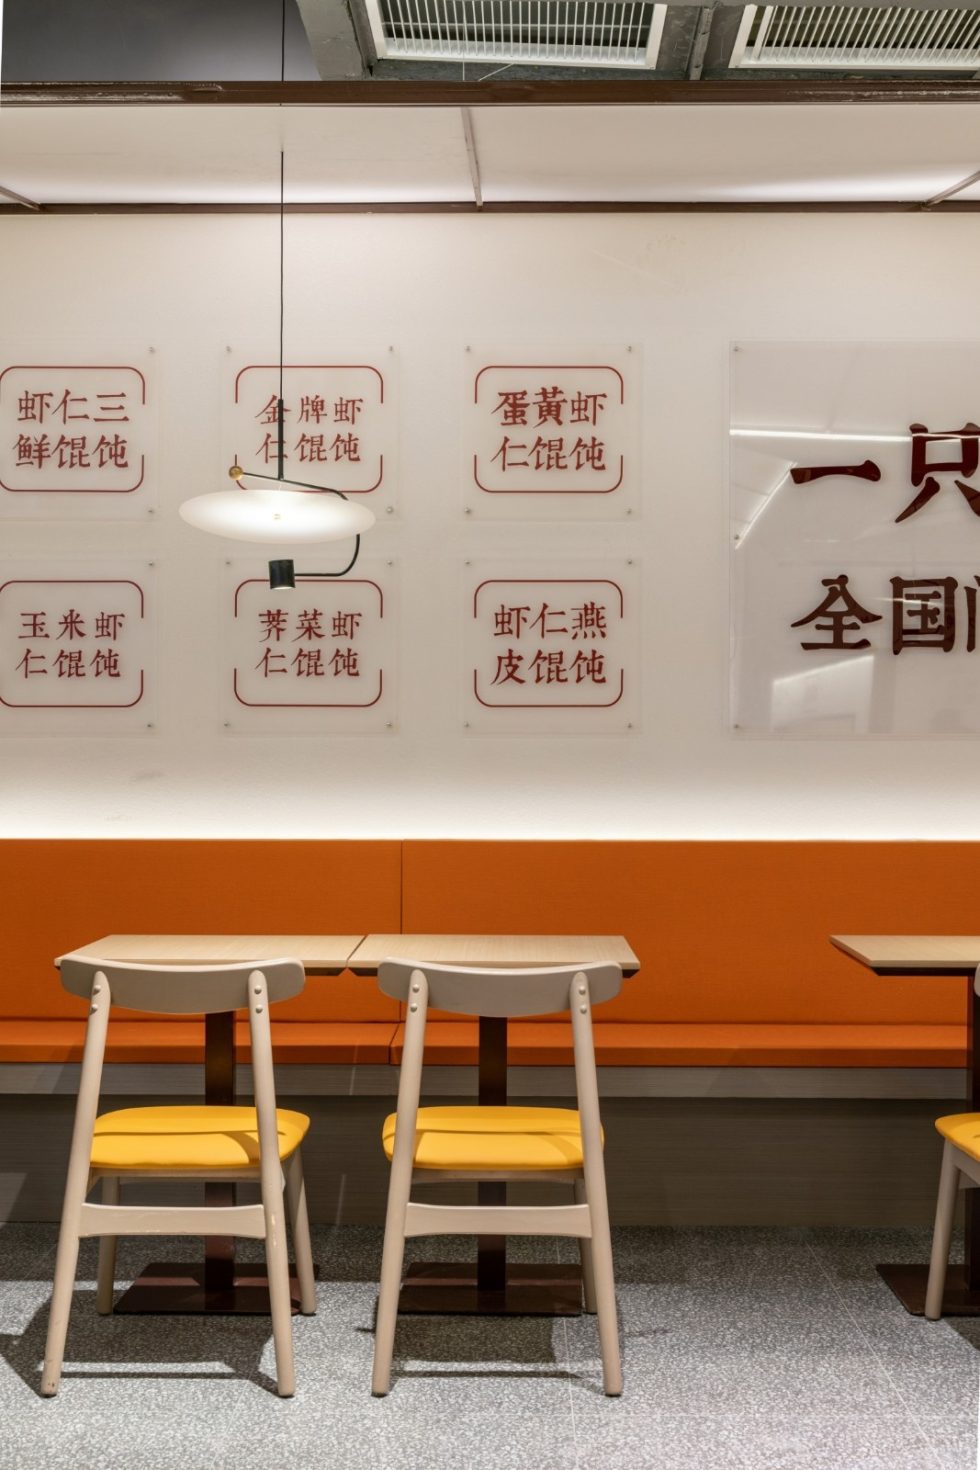 深圳龙岗京基御景时代现代中式风格馄饨面食店装修案例卡座沙发